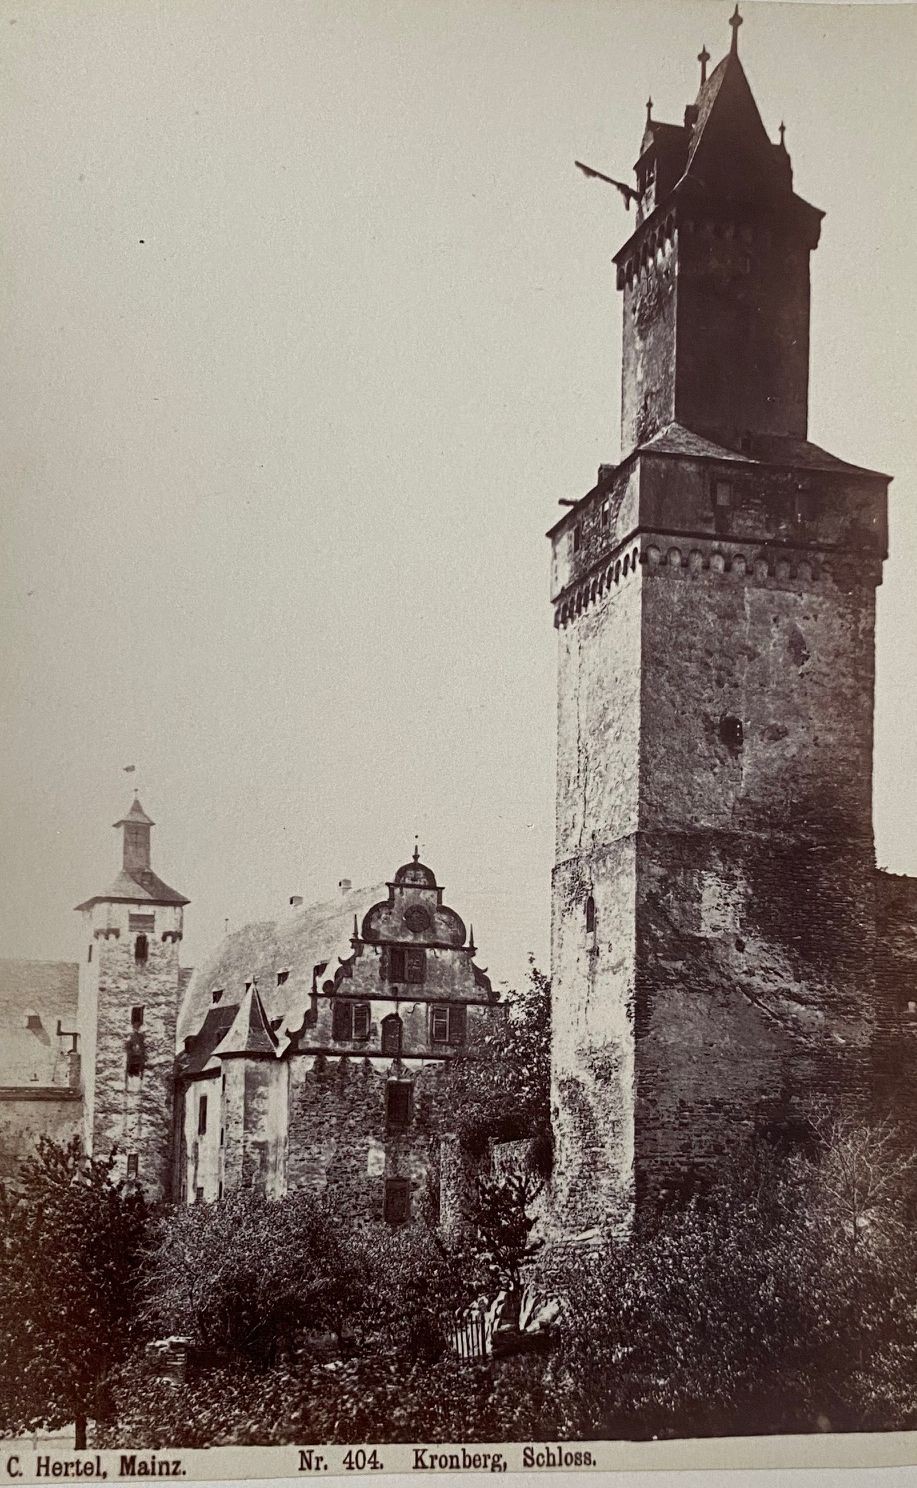 Fotografie, Carl Hertel No. 404, Kronberg, Schloss, ca. 1885 (Taunus-Rhein-Main - Regionalgeschichtliche Sammlung Dr. Stefan Naas CC BY-NC-SA)